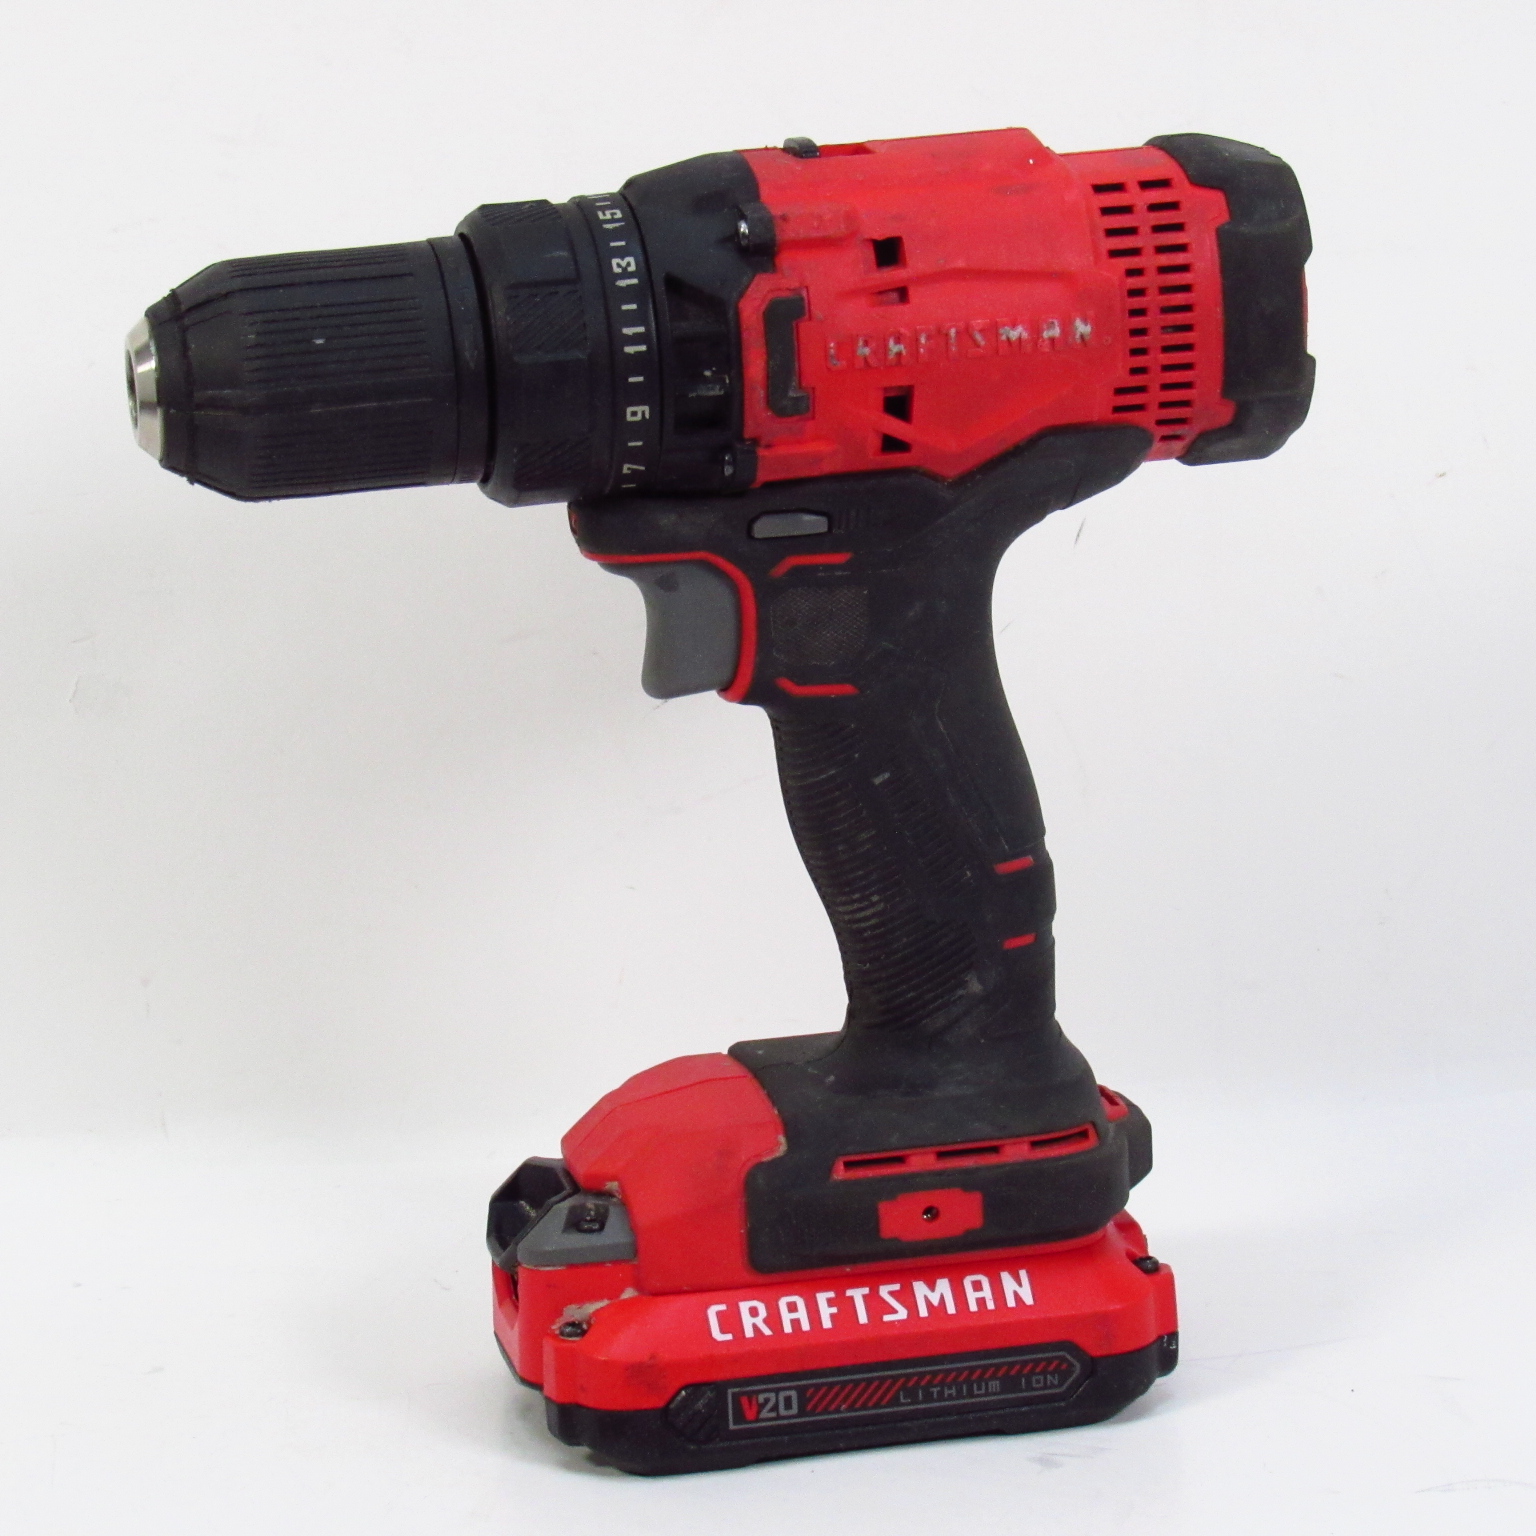 CRAFTSMAN V20* Cordless Drill/Driver Kit Brushless (CMCD710C1) Red